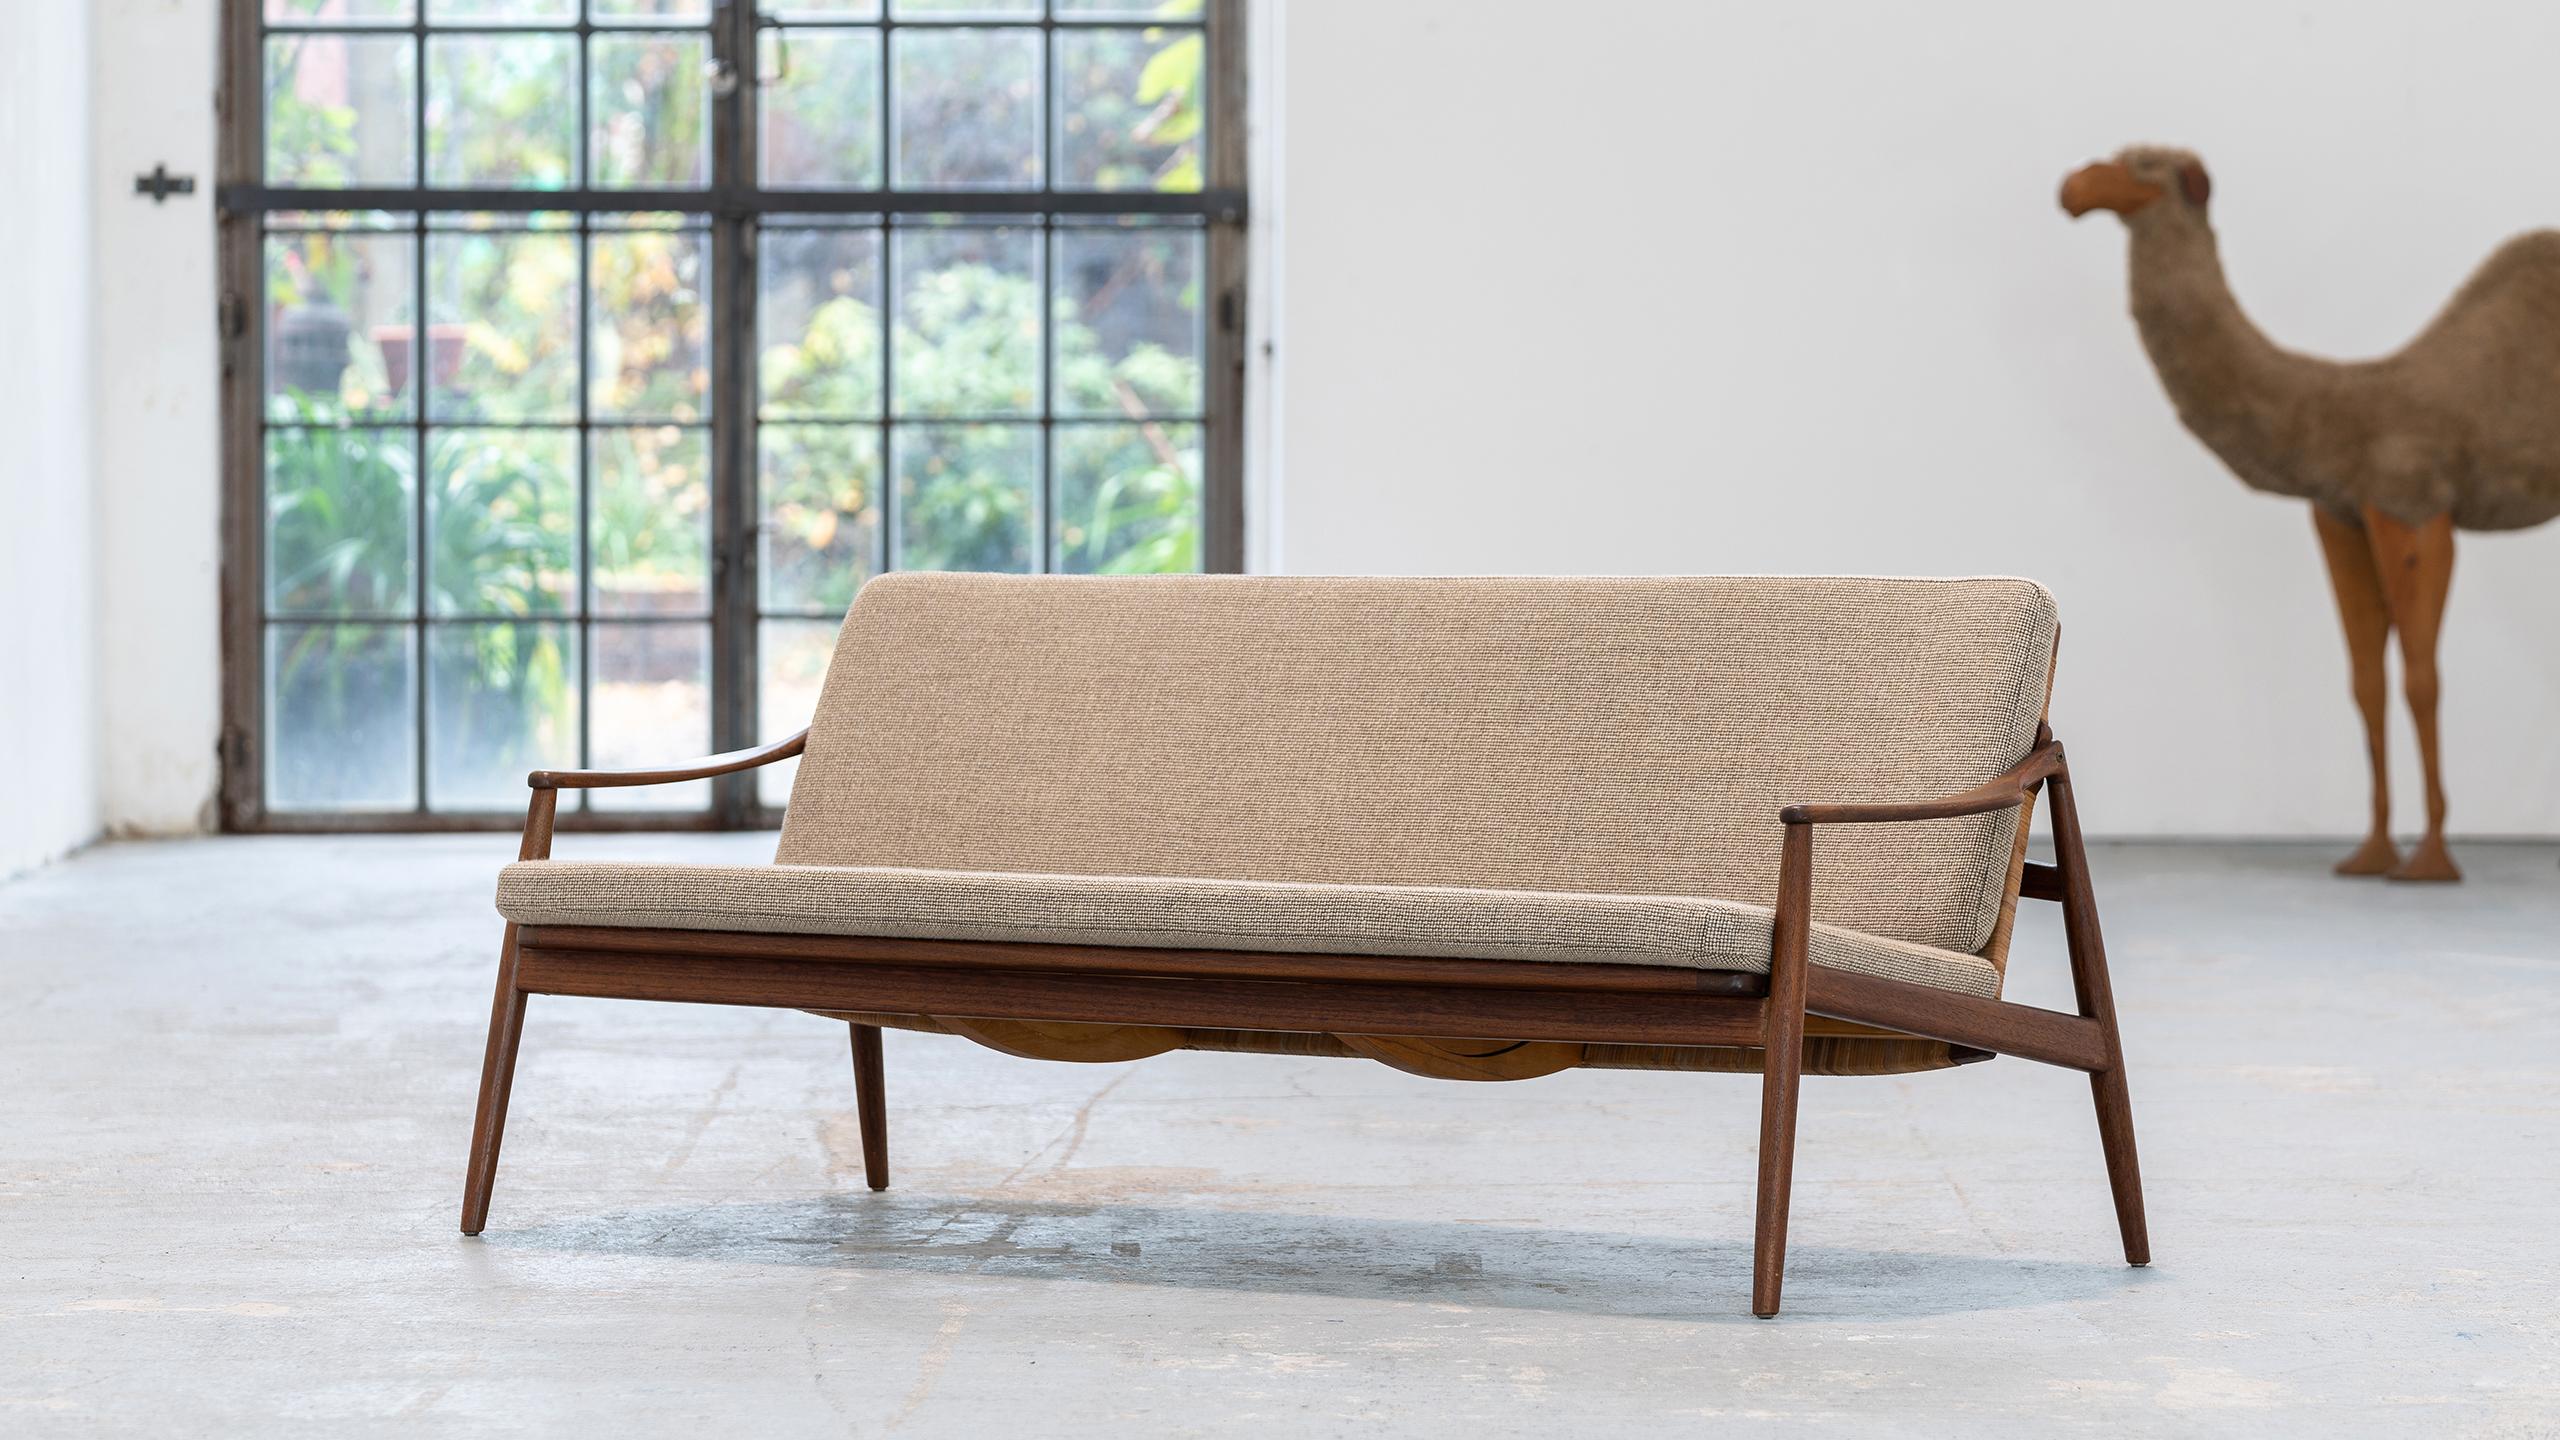 Canapé trois places conçu par Hartmut Lohmeyer pour Wilkhahn en 1962.
Fabriqué à la main en Allemagne par Wilkhahn.

Le canapé est sensuel et de forme organique. Le dossier est légèrement incliné et les pieds sont fuselés. Les accoudoirs